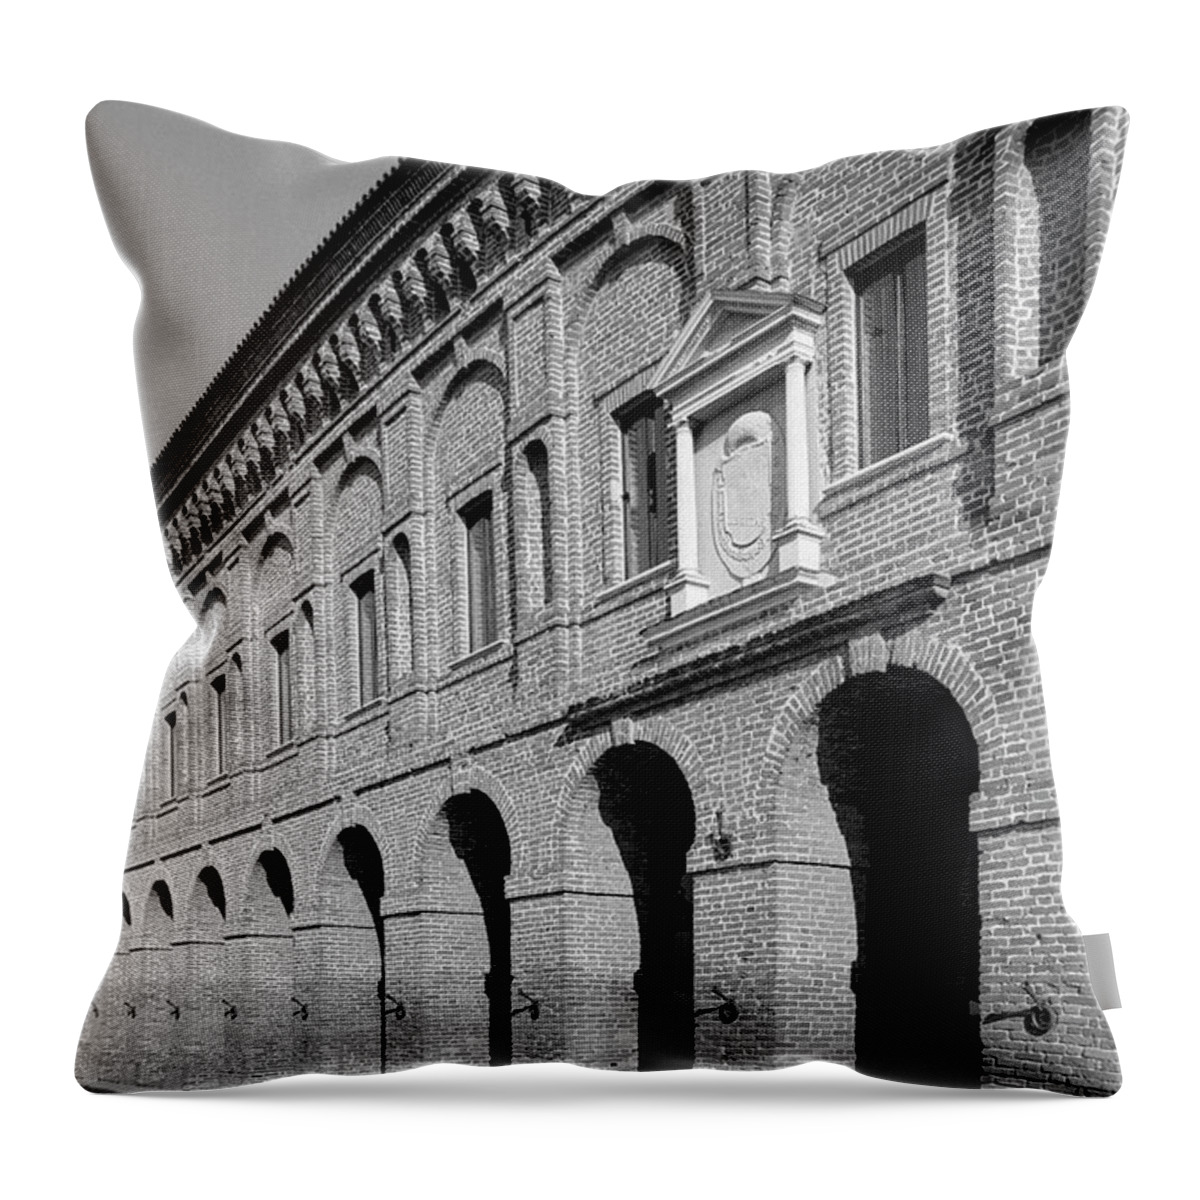 Galleria Degli Antichi Throw Pillow featuring the photograph Galleria degli Antichi by Riccardo Mottola